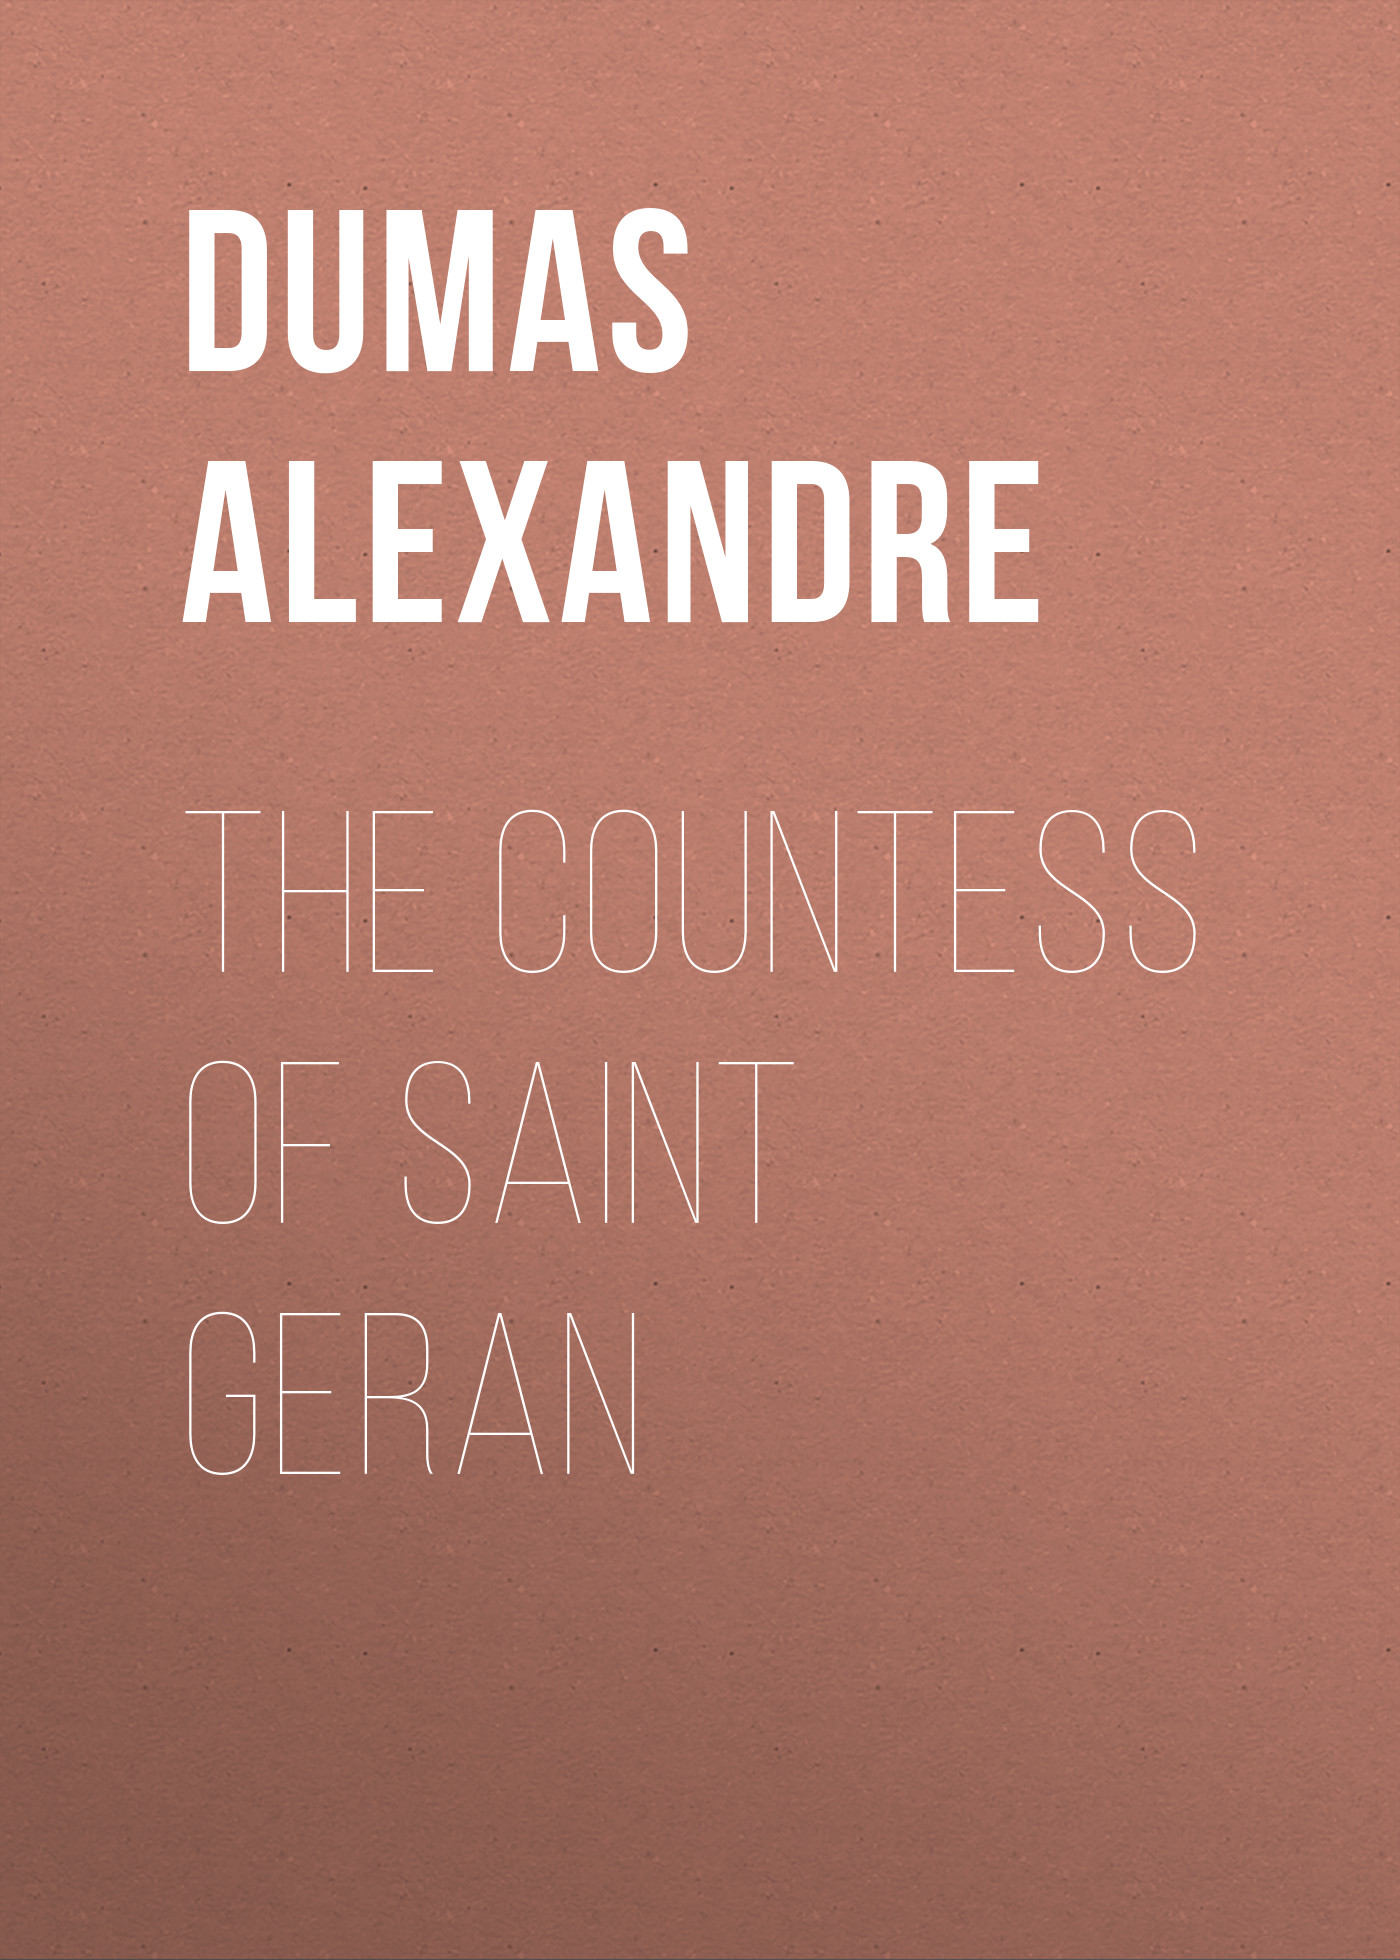 Книга The Countess of Saint Geran из серии , созданная Alexandre Dumas, может относится к жанру Литература 19 века, Зарубежная старинная литература, Зарубежная классика. Стоимость электронной книги The Countess of Saint Geran с идентификатором 25203703 составляет 0 руб.